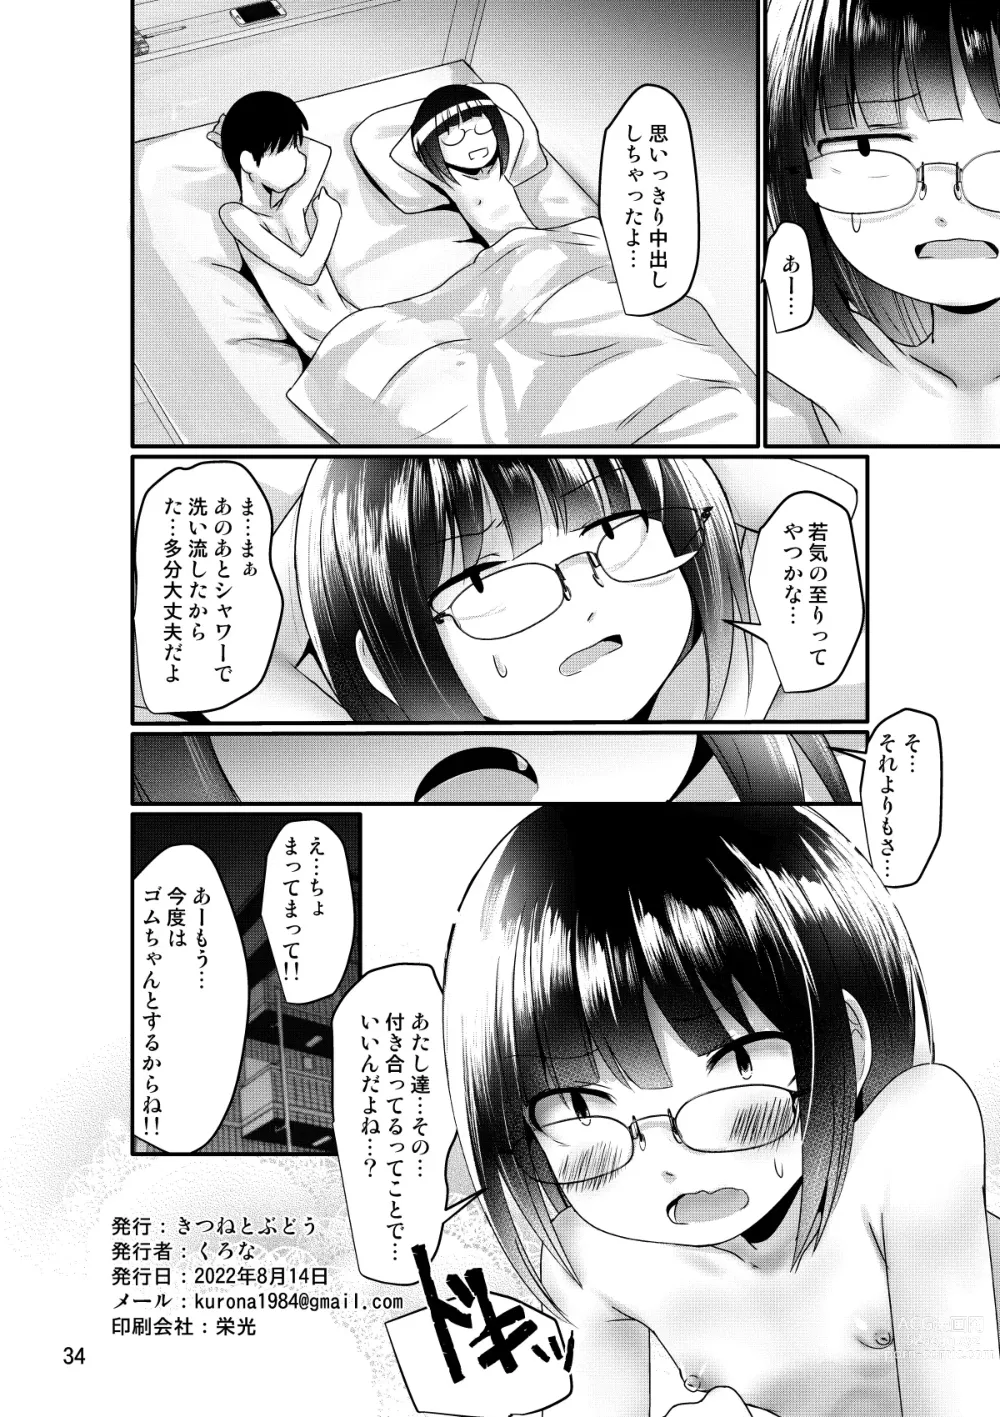 Page 34 of doujinshi Manken Joshi wa Kyoumi ga Aru